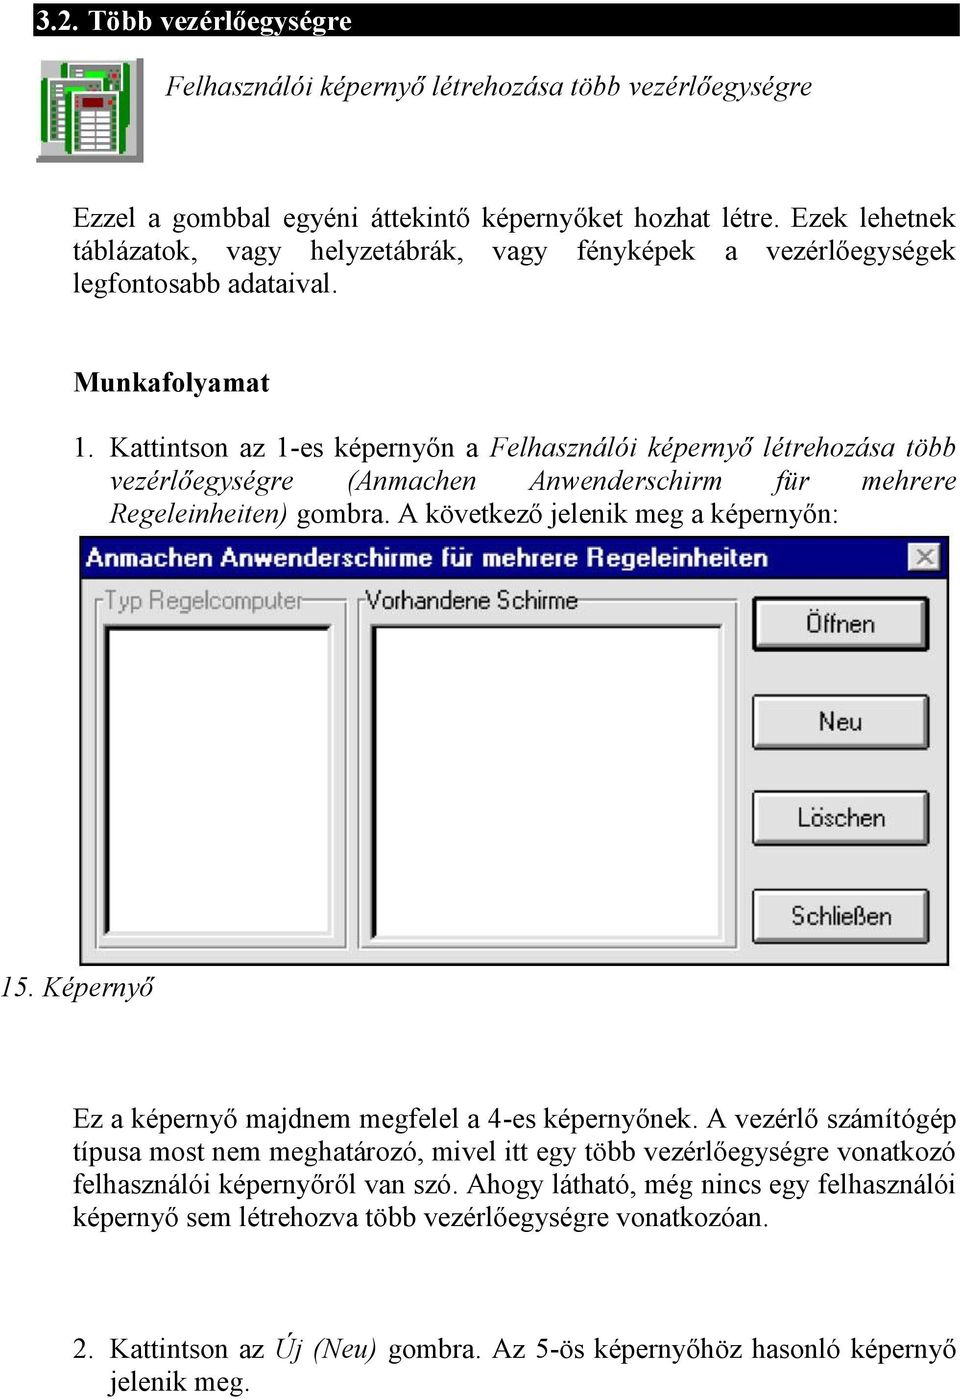 Kattintson az 1-es képernyőn a Felhasználói képernyő létrehozása több vezérlőegységre (Anmachen Anwenderschirm für mehrere Regeleinheiten) gombra. A következő jelenik meg a képernyőn: 15.